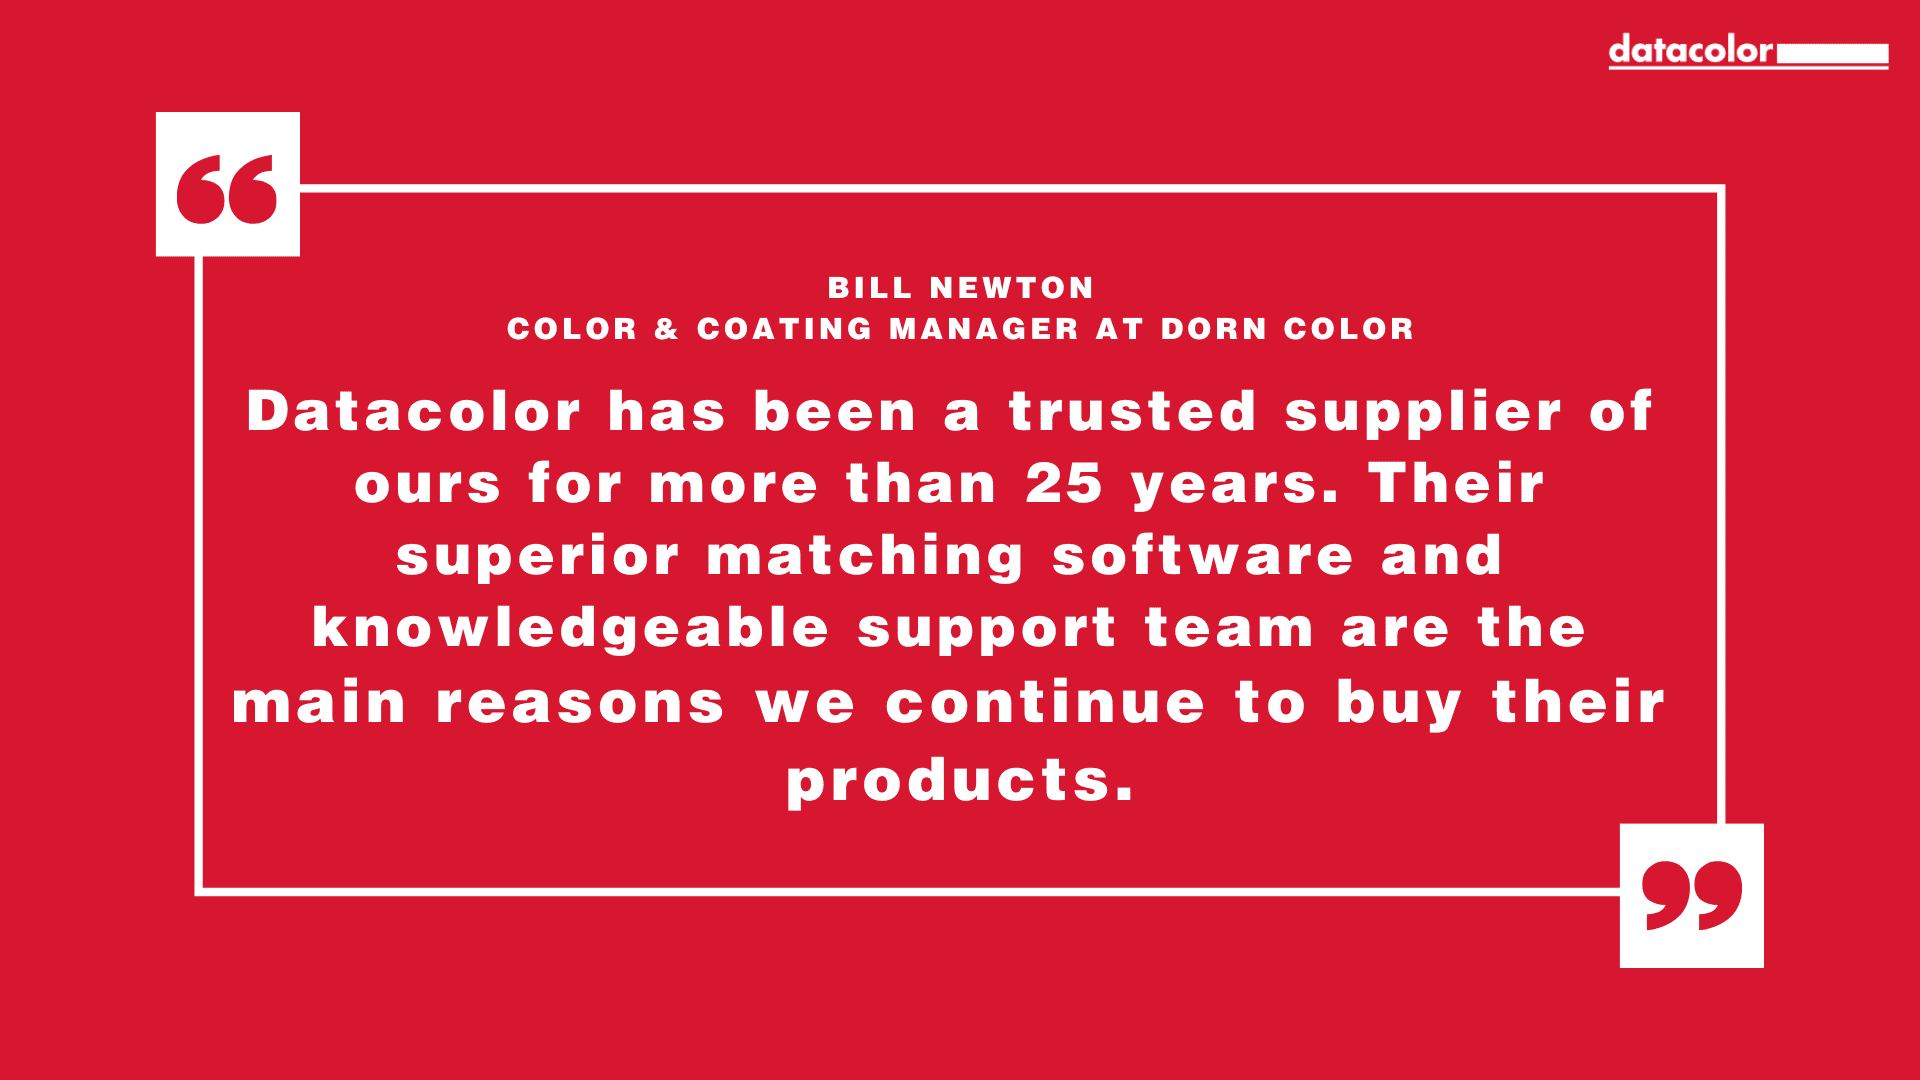 Citazione di Bill Newton, responsabile del settore colore e rivestimenti di Dorn Color